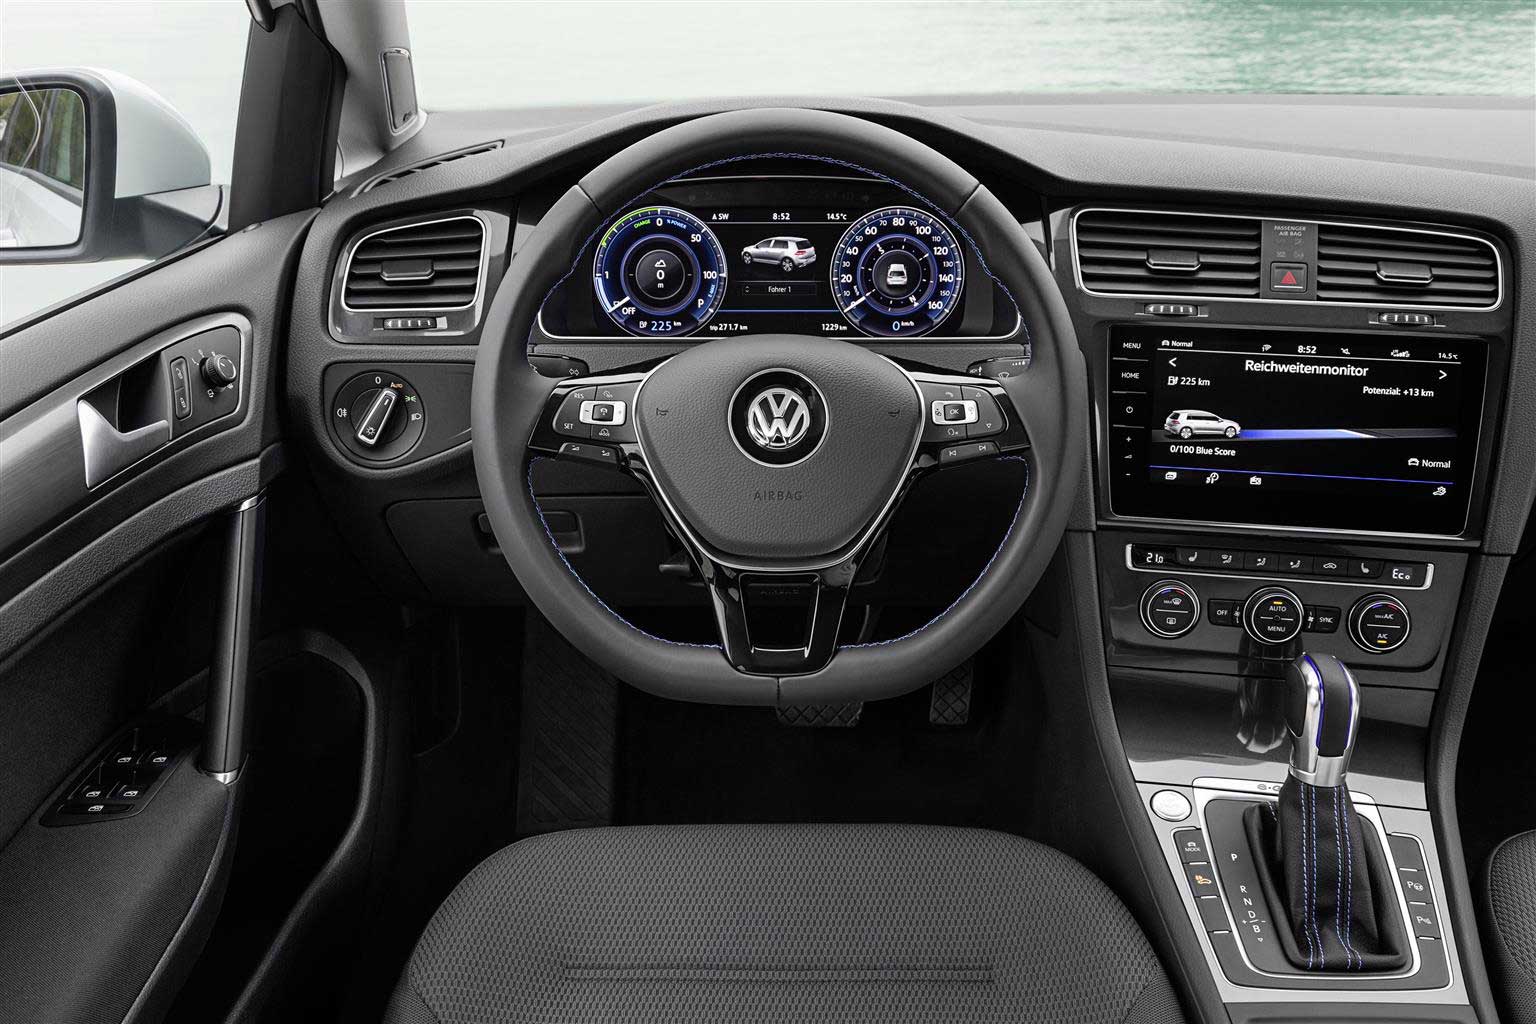 Volkswagen rinnova l’offerta elettrica con una netta riduzione dei prezzi di listino